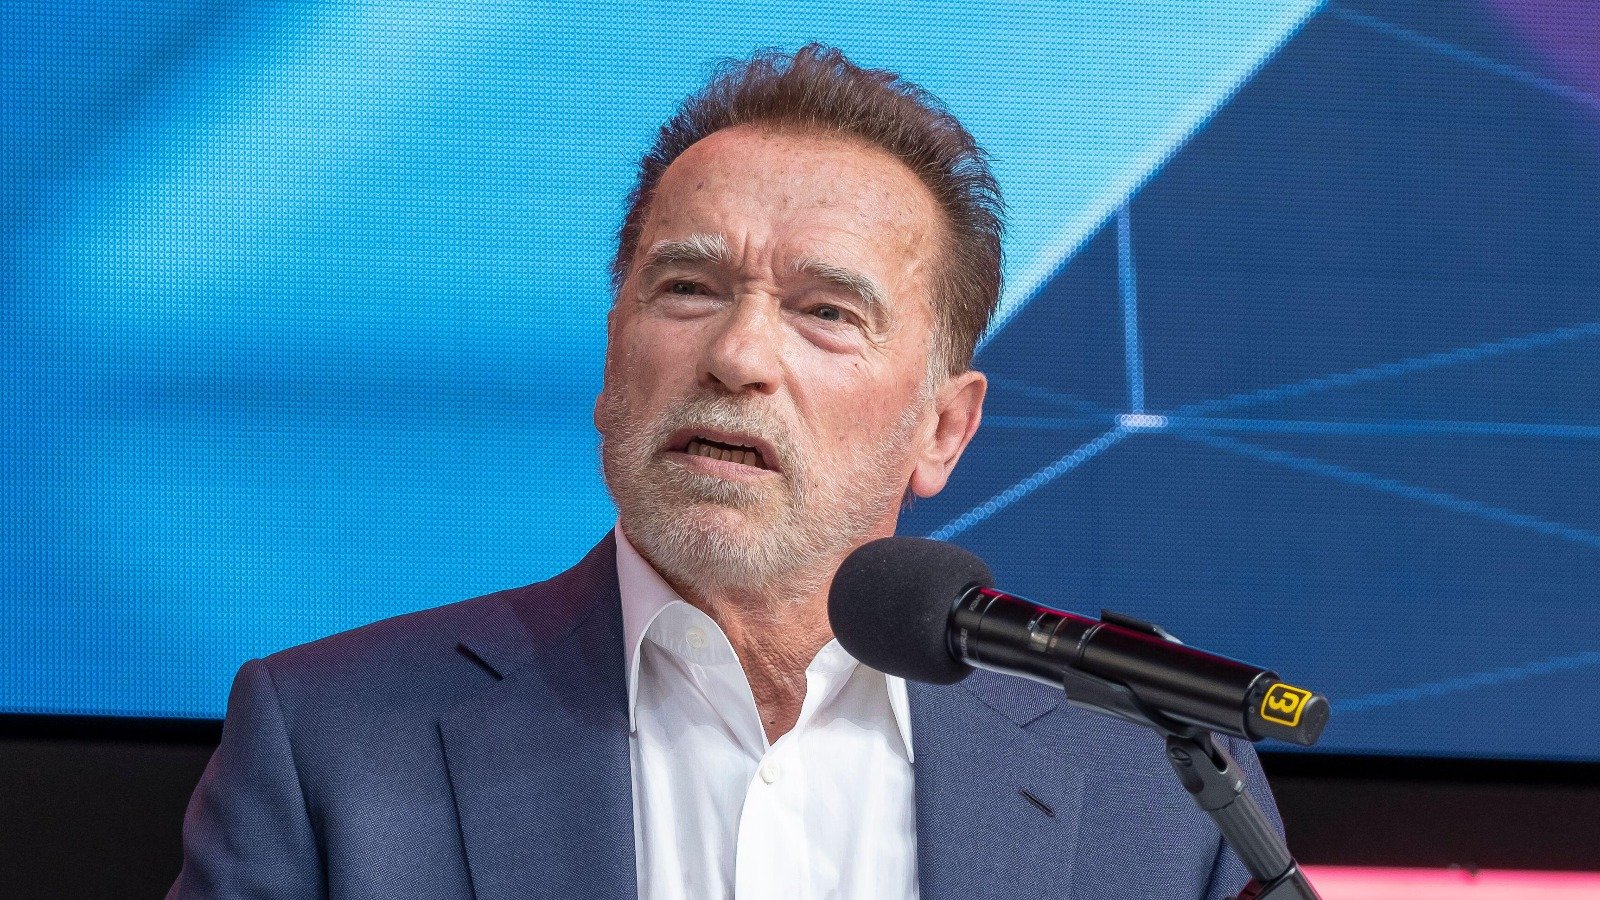 Arnold Schwarzenegger making a speech